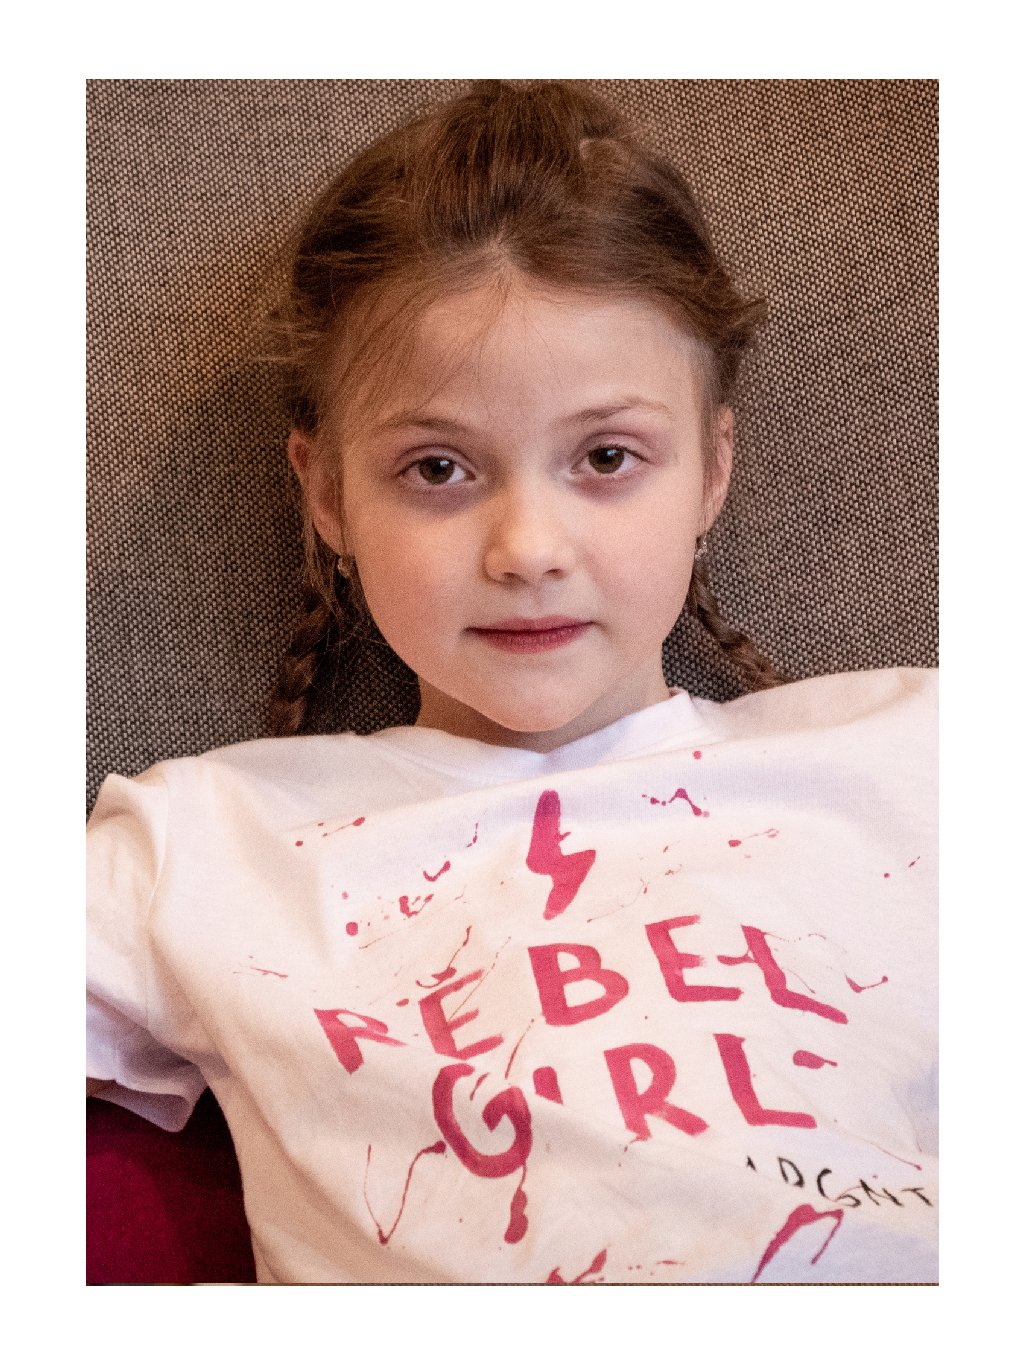 Dětské triko Rebel girl.